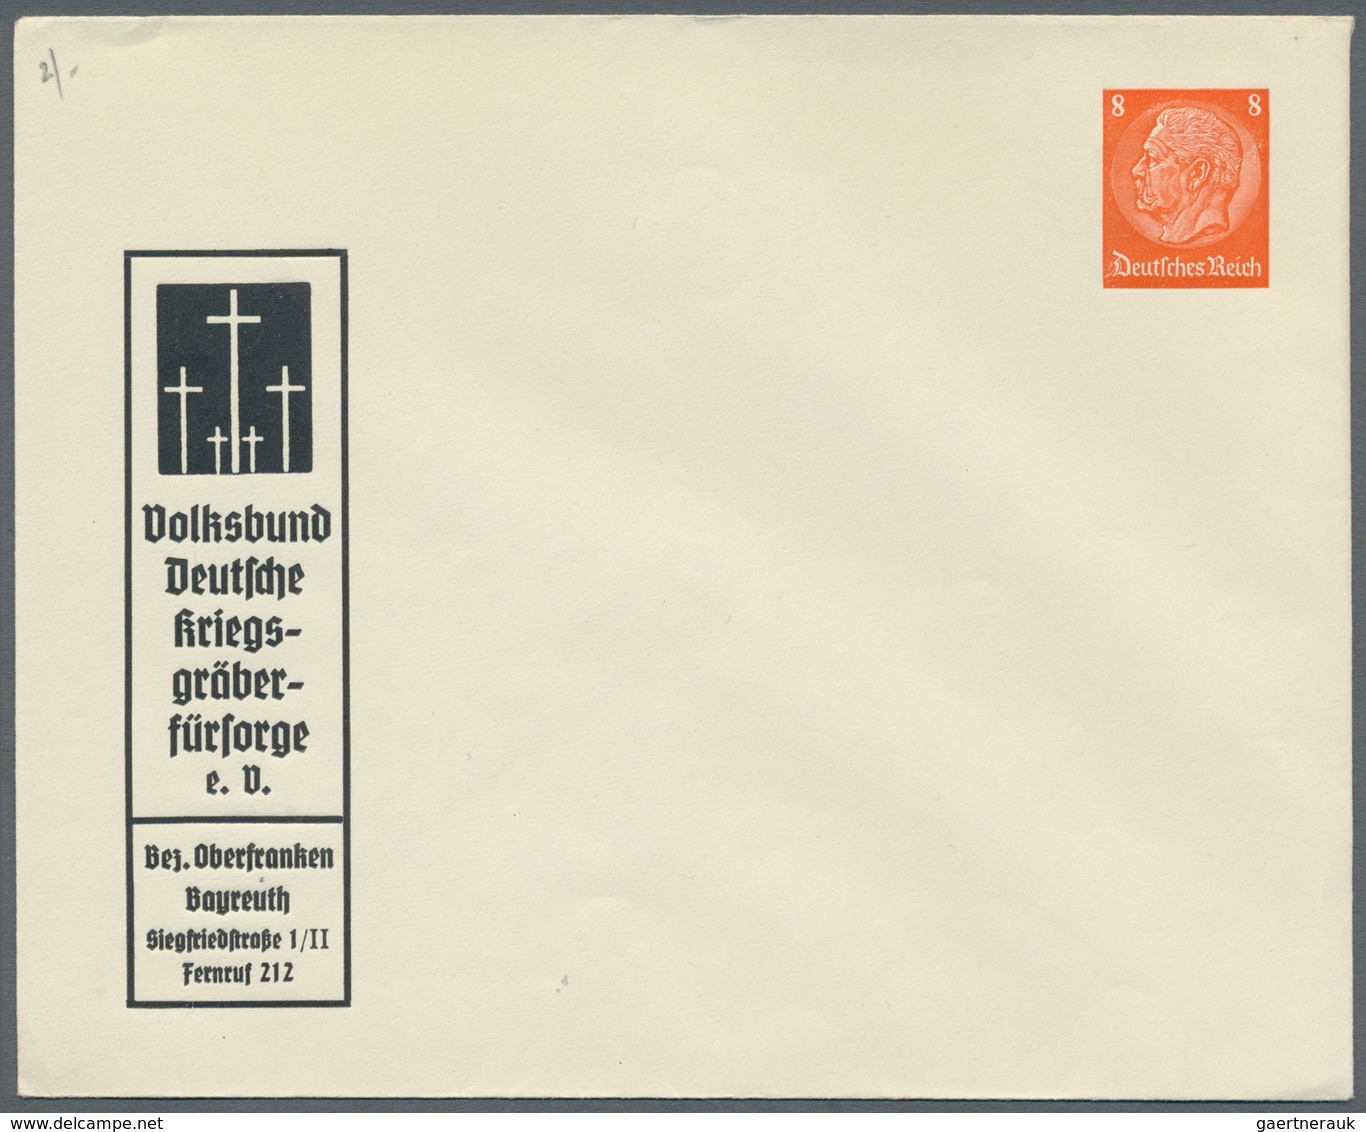 Deutsches Reich - Privatganzsachen: 1933/1944, interessanter Sammlungsposten mit ca. 85 ungebrauchte